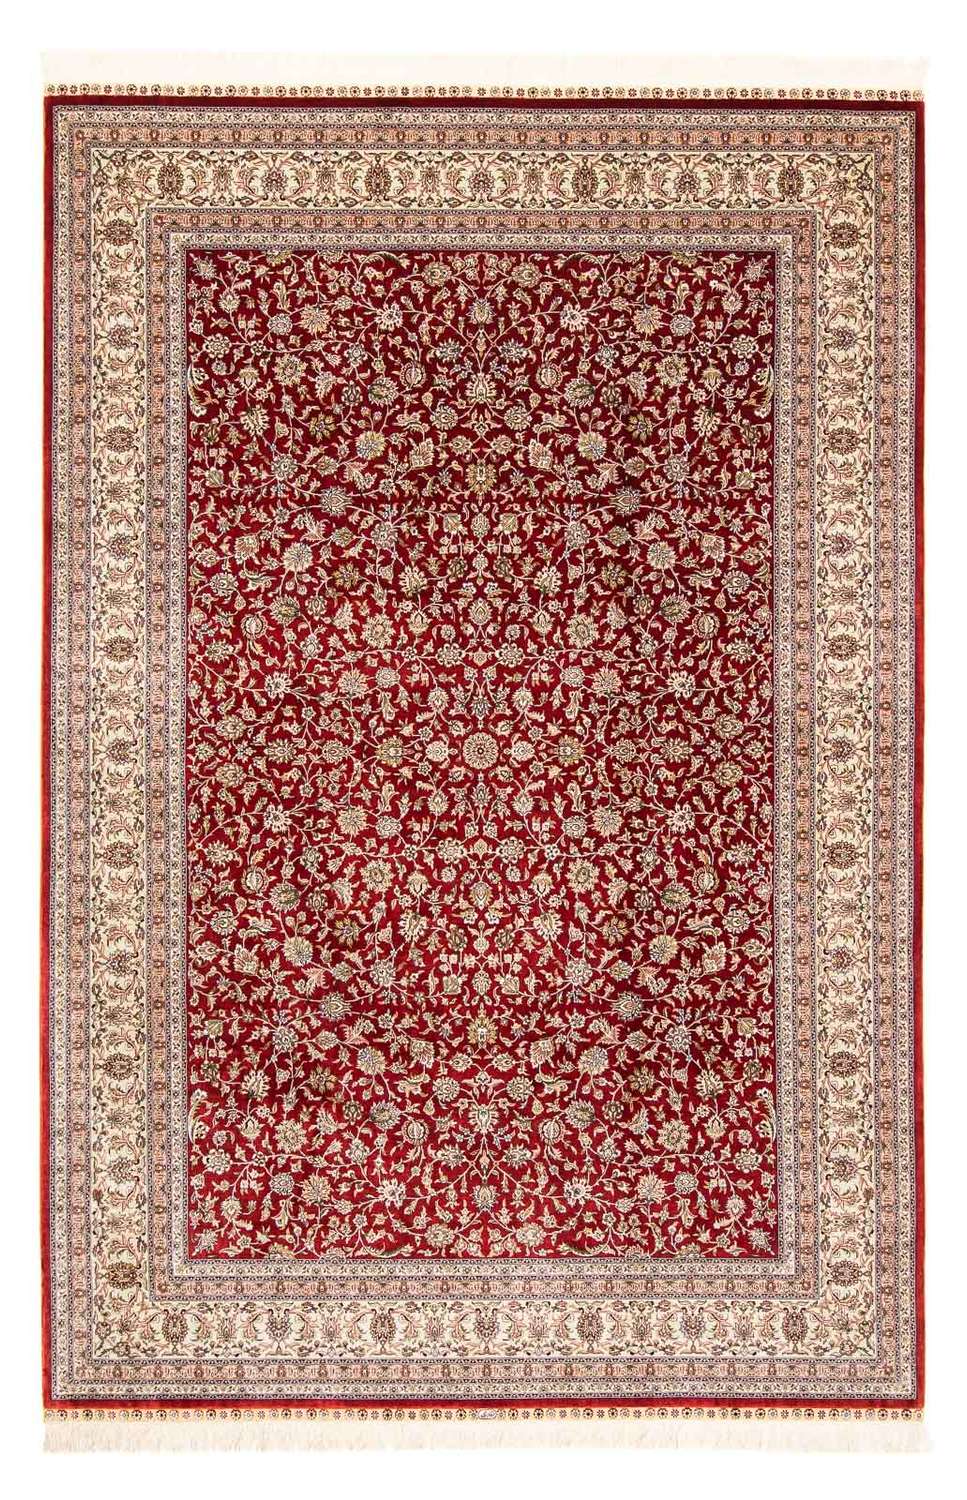 Tapis oriental - Hereke - 276 x 185 cm - rouge foncé